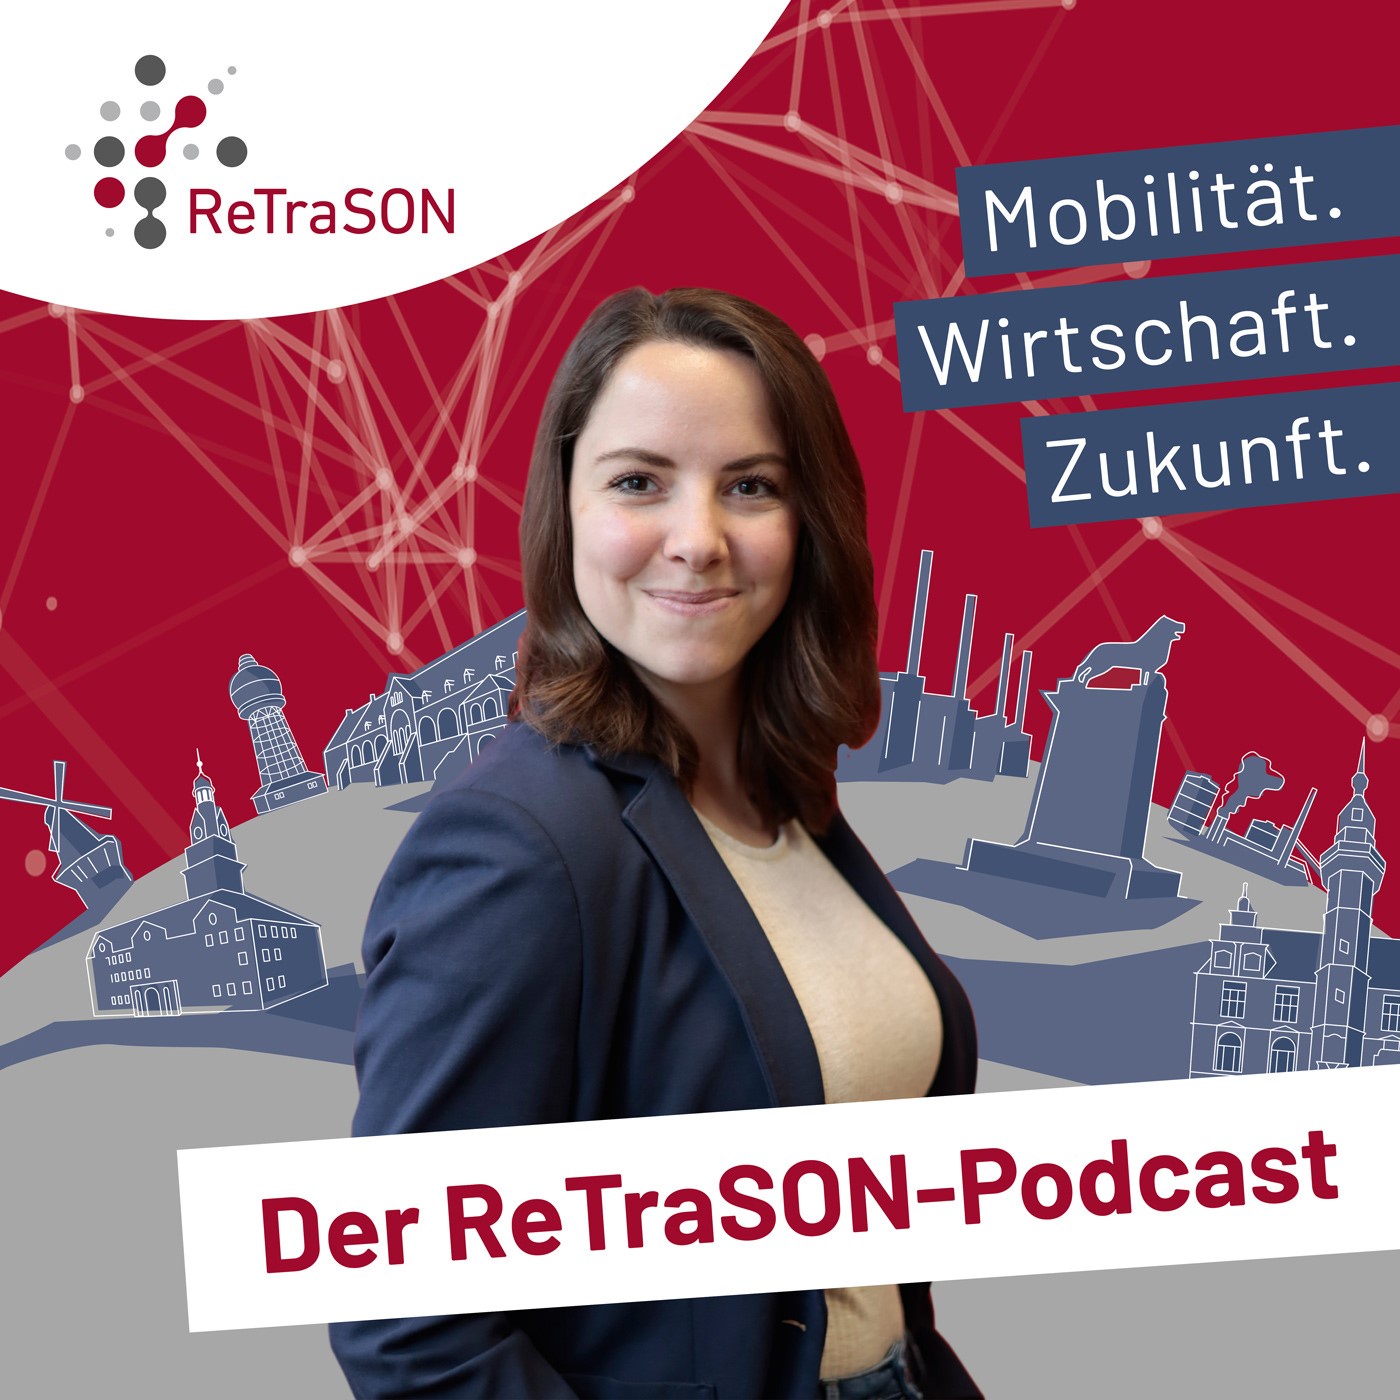 Mobilität. Wirtschaft. Zukunft. Der ReTraSON-Podcast